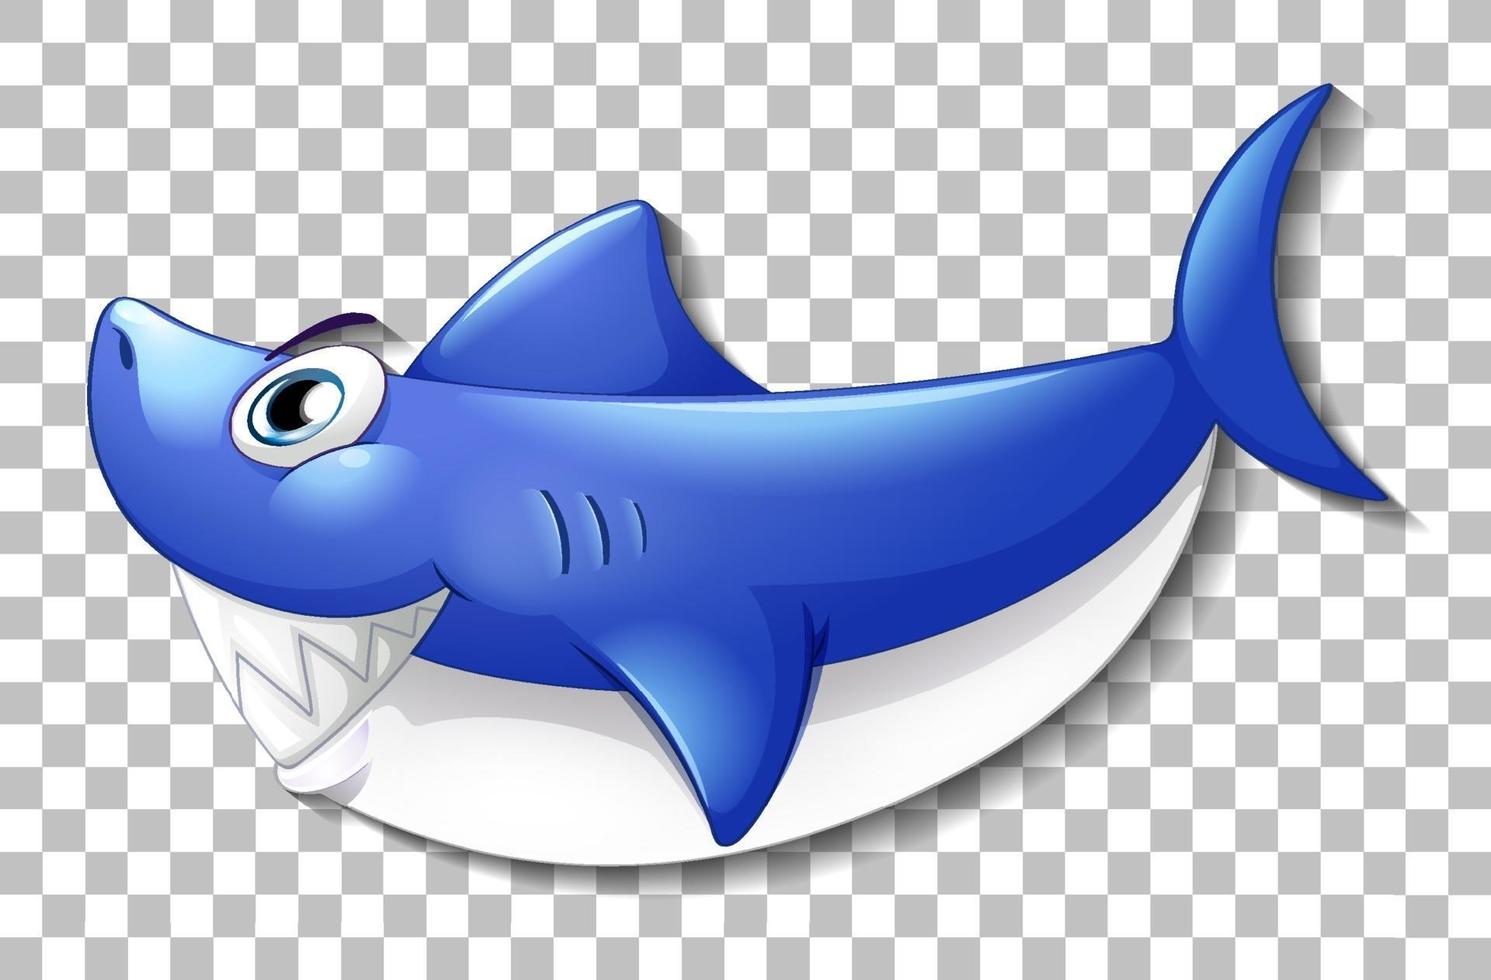 lächelnde niedliche Hai-Zeichentrickfigur lokalisiert auf transparentem Hintergrund vektor